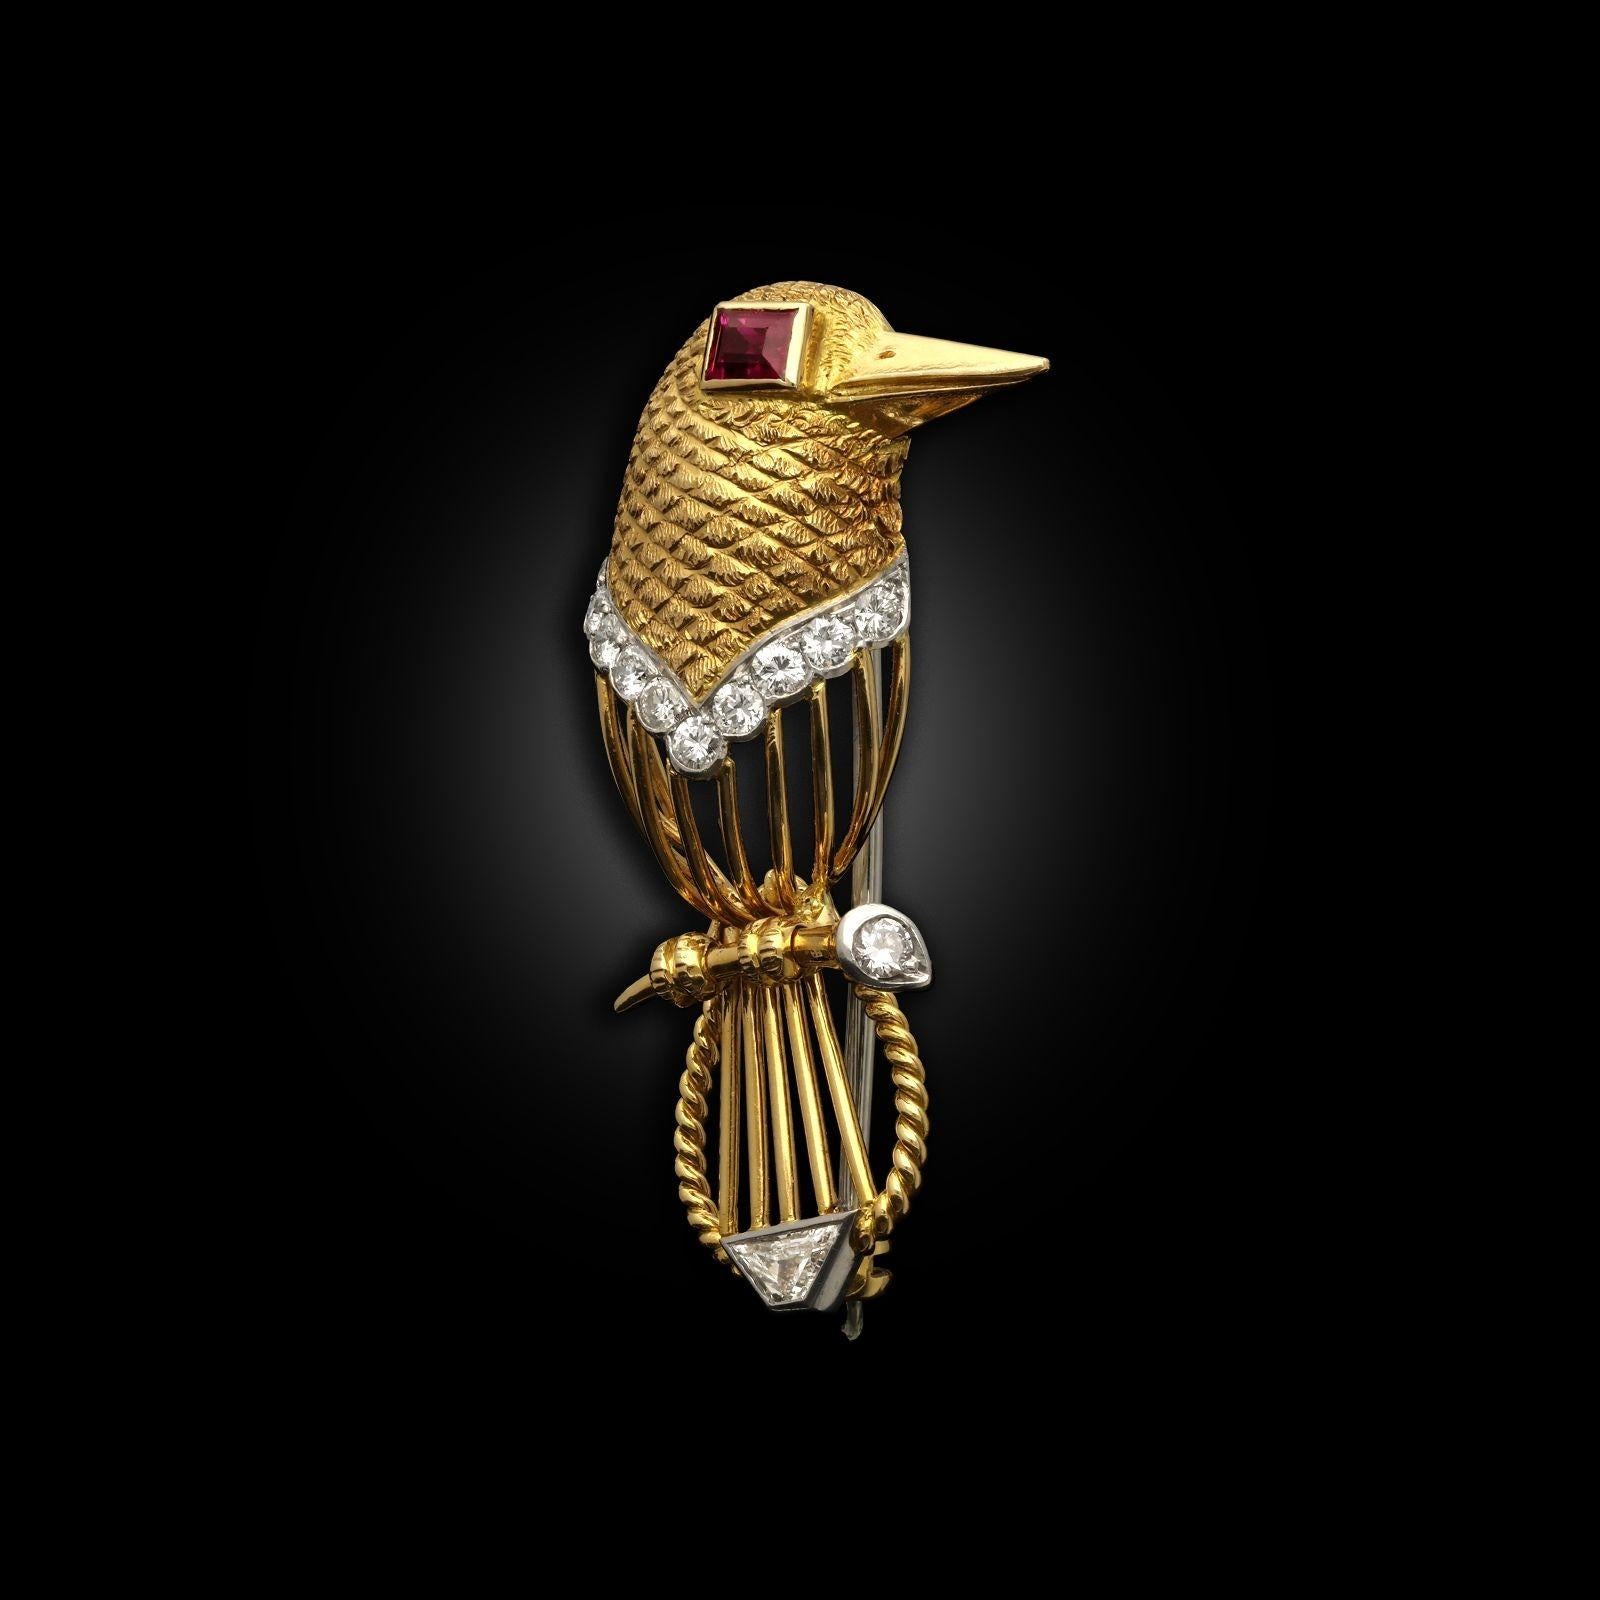 Eine stilisierte Vogelbrosche von Cartier aus den 1960er Jahren. Der Vogel ist aus 18-karätigem Gelbgold mit einem strukturierten Federmuster auf dem Kopf und einem offenen Golddrahtkörper mit einer Seilverdrehung am Schwanz gefertigt. Der Vogel hat